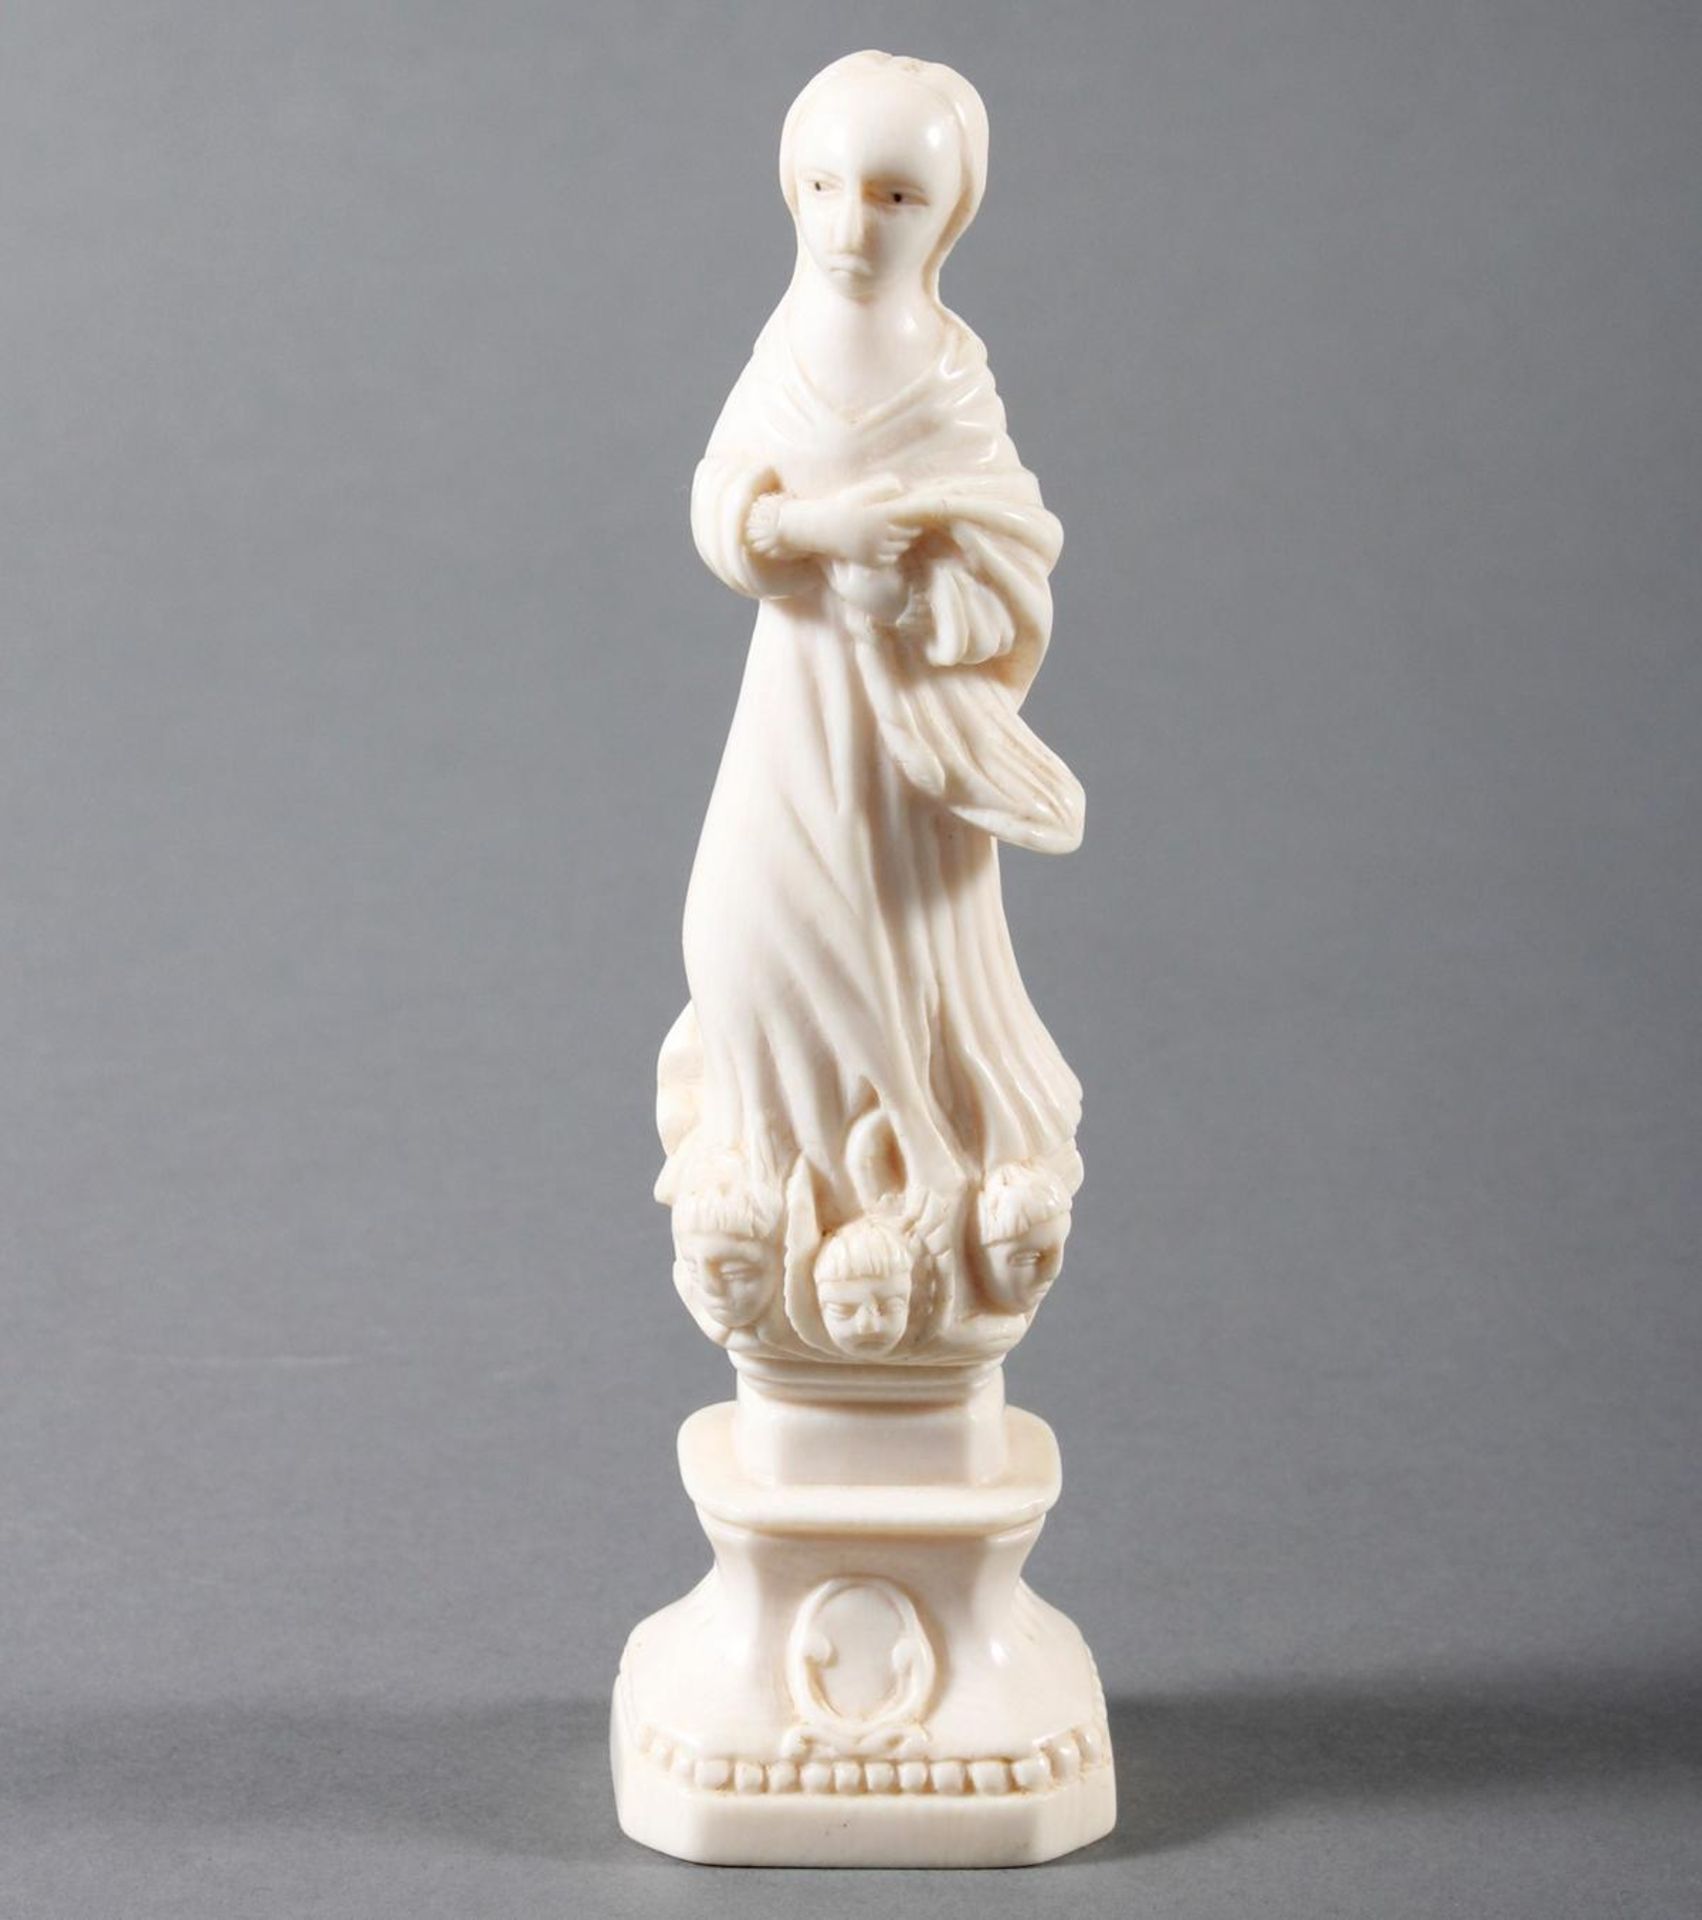 Elfenbeinschnitzerei einer Heiligen auf einem Podest stehend